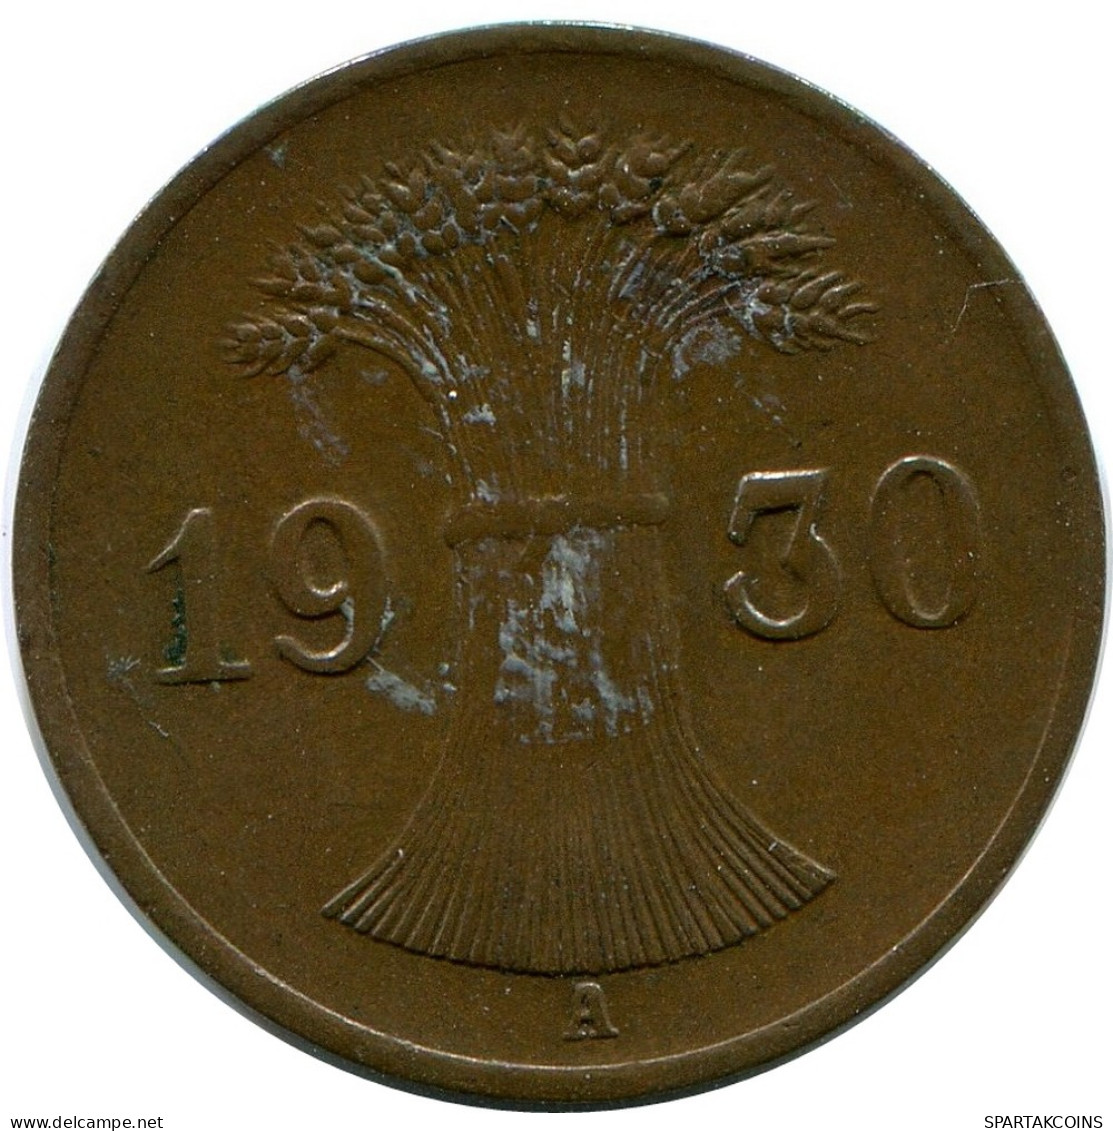 1 REICHSPFENNIG 1930 A ALEMANIA Moneda GERMANY #DB785.E - 1 Rentenpfennig & 1 Reichspfennig